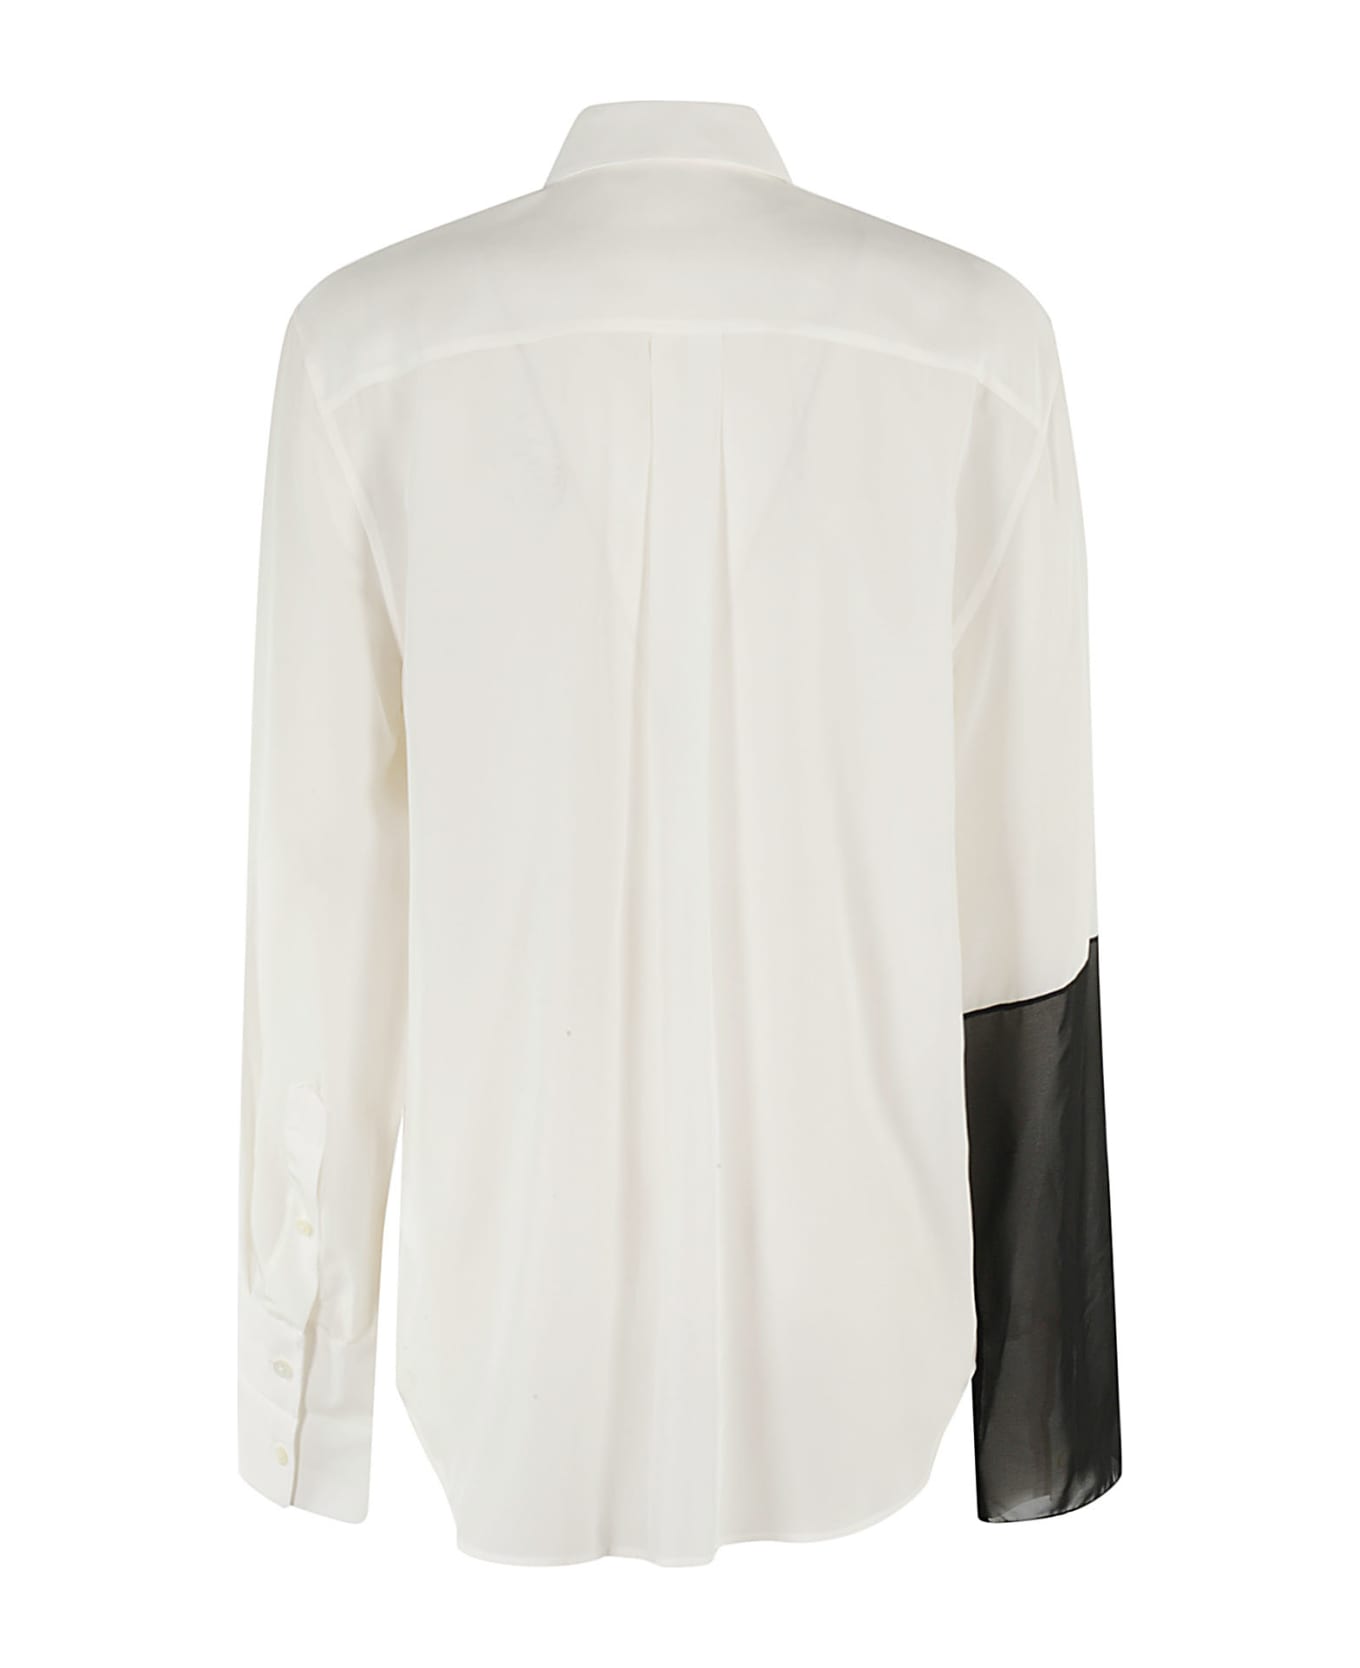 Helmut Lang Cb Relaxed Shirt - White Black